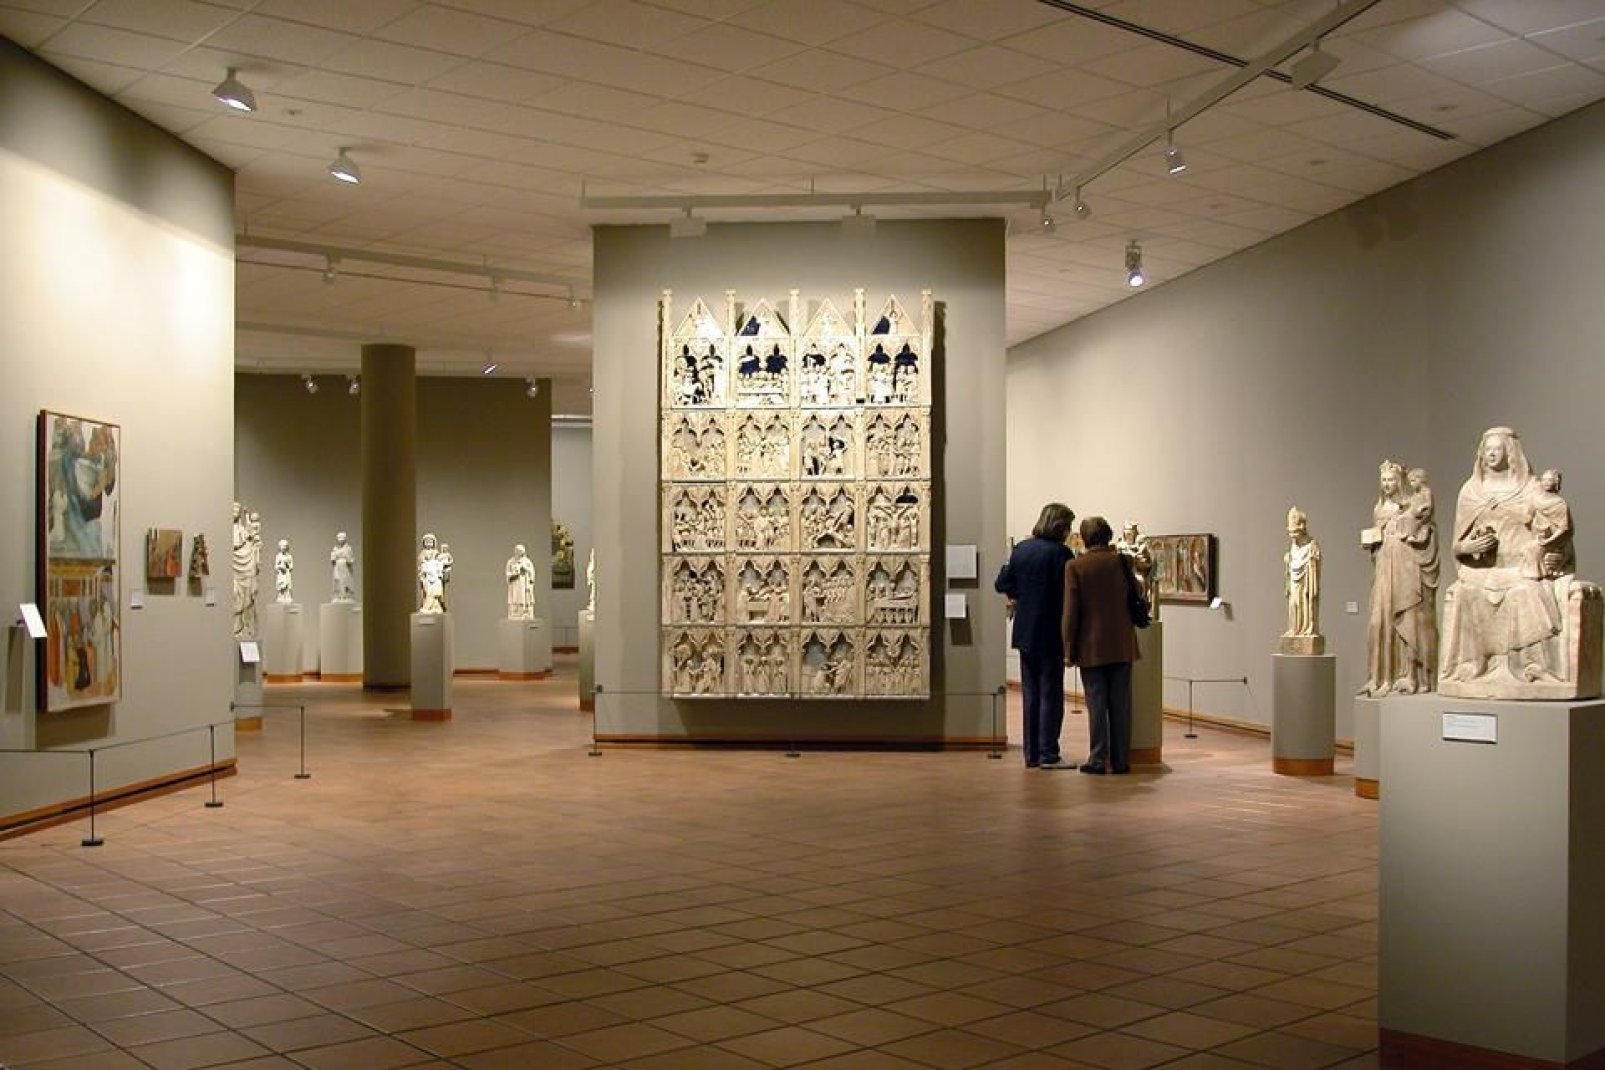 Alberga la segunda colección más importante del país de arte románico catalán.